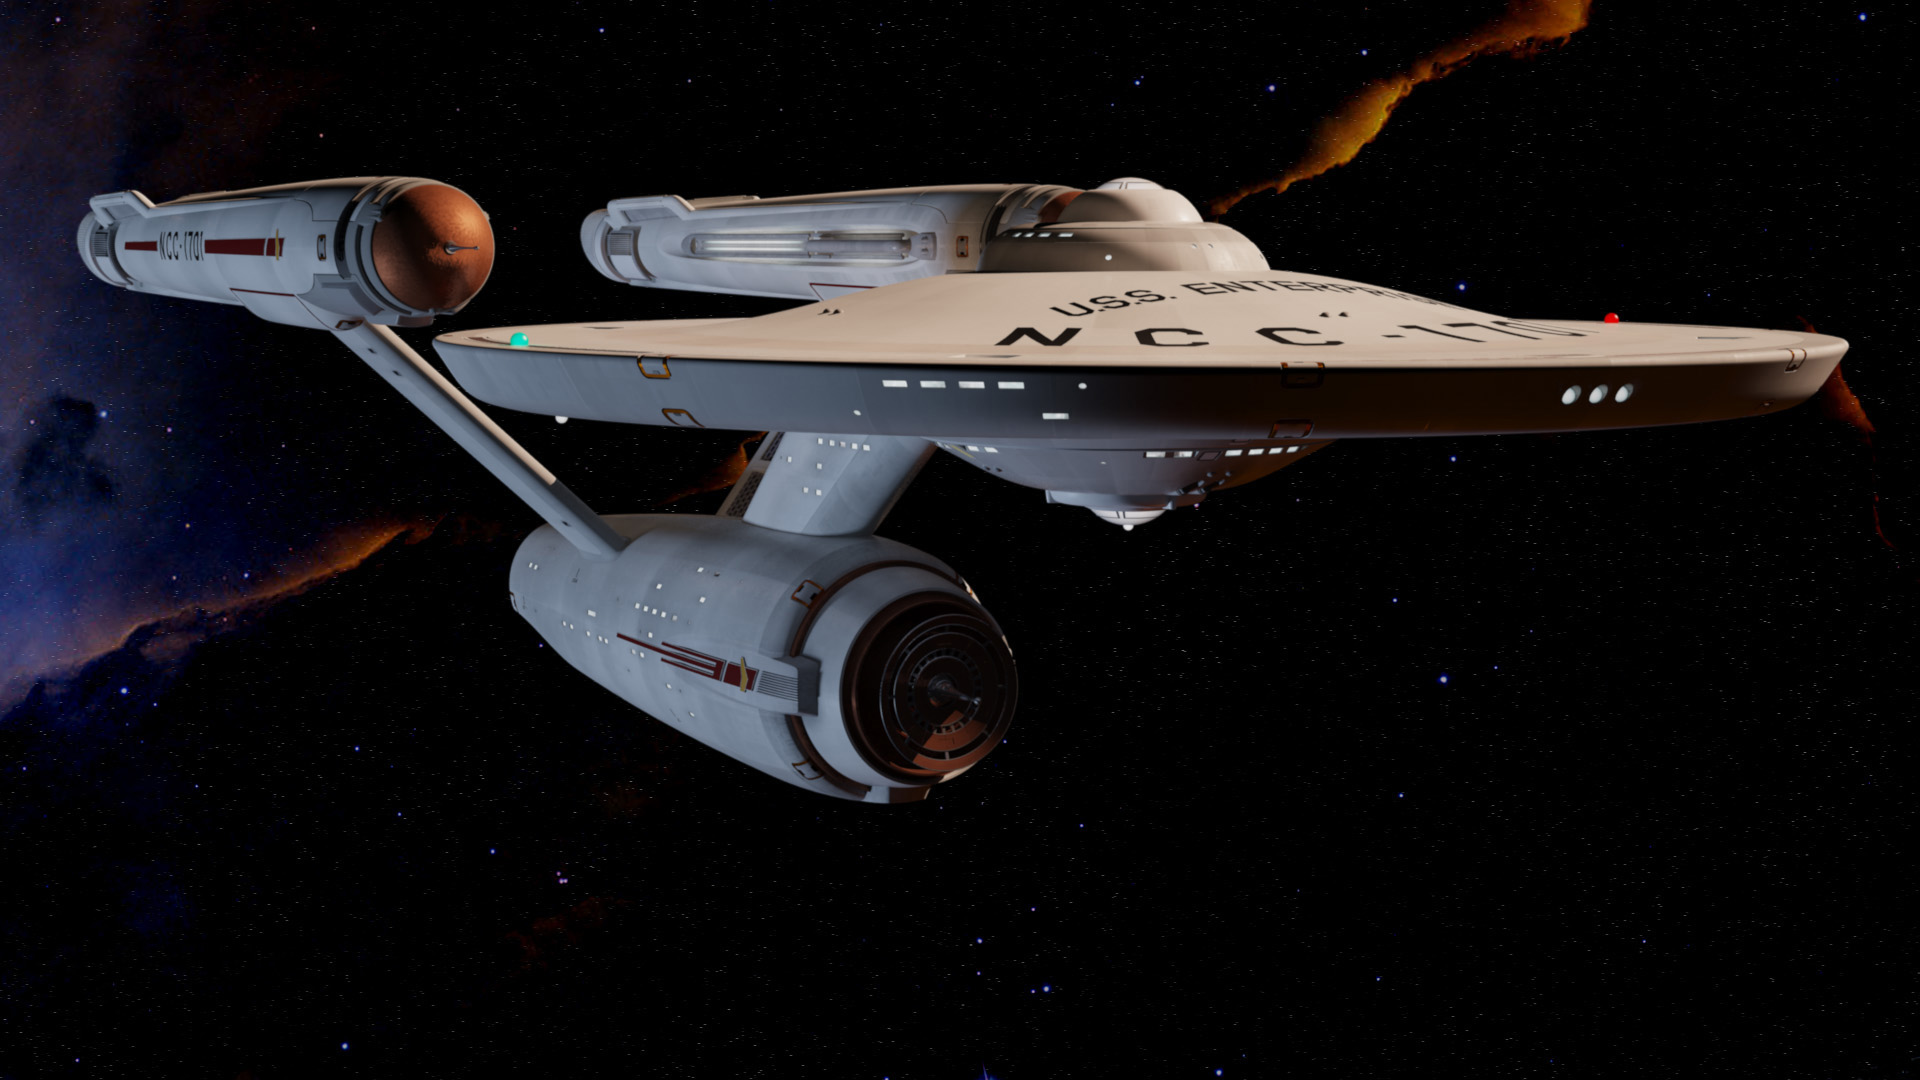 Star Trek Widescreen Wallpaper Tos Tng Ds9 Voyager